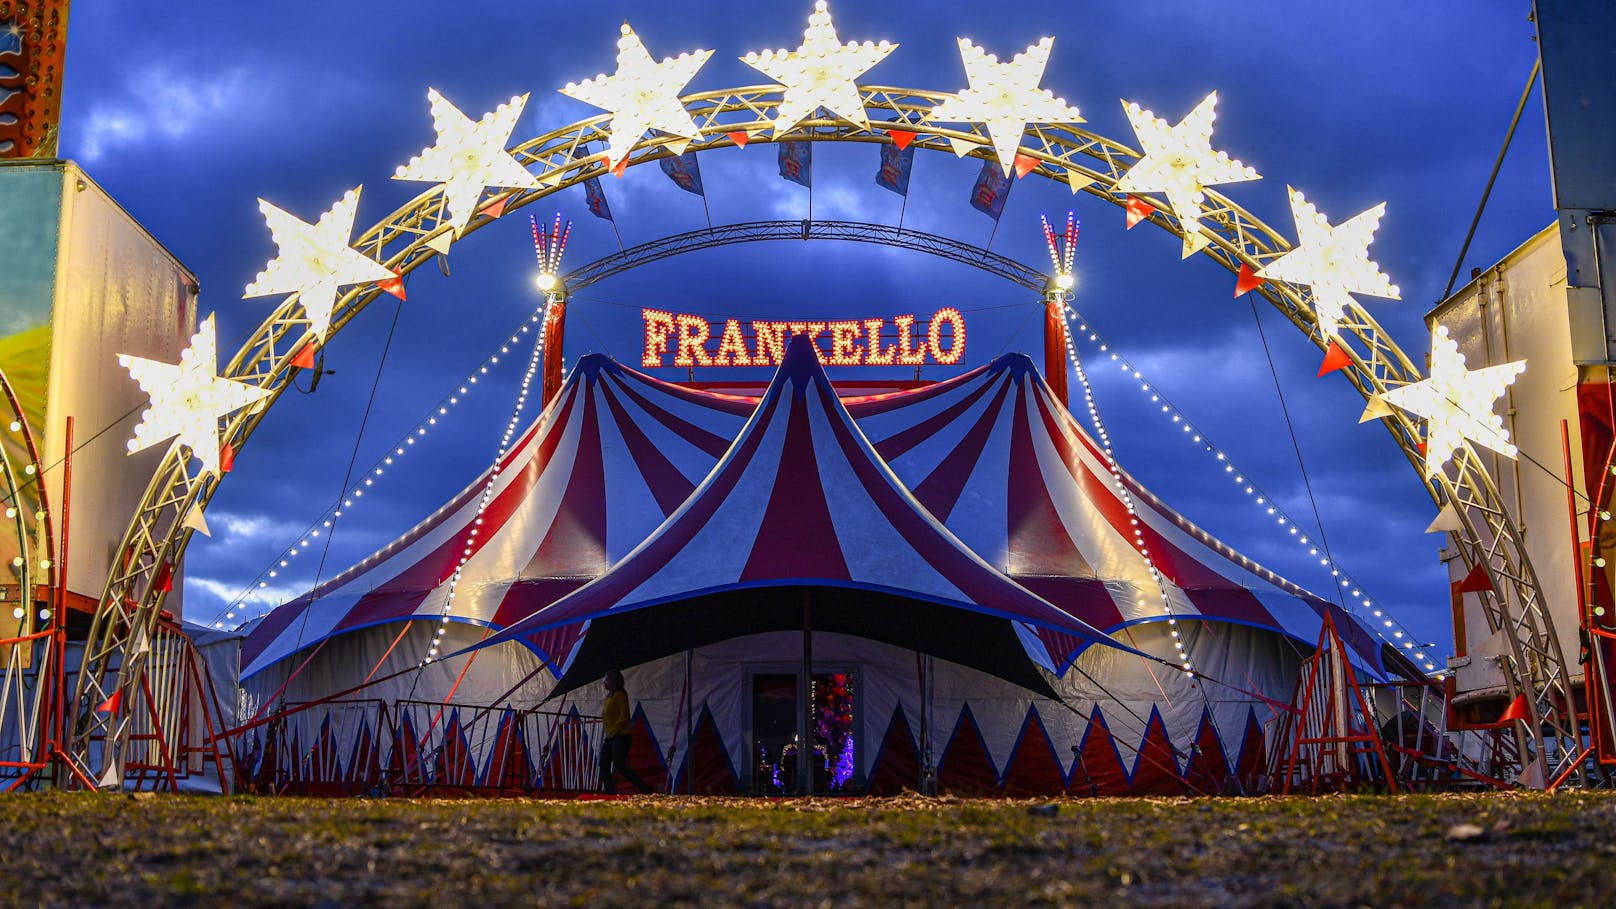 Bereits in der 9. Generation betreibt die Familie Frank klassischen Zirkus.